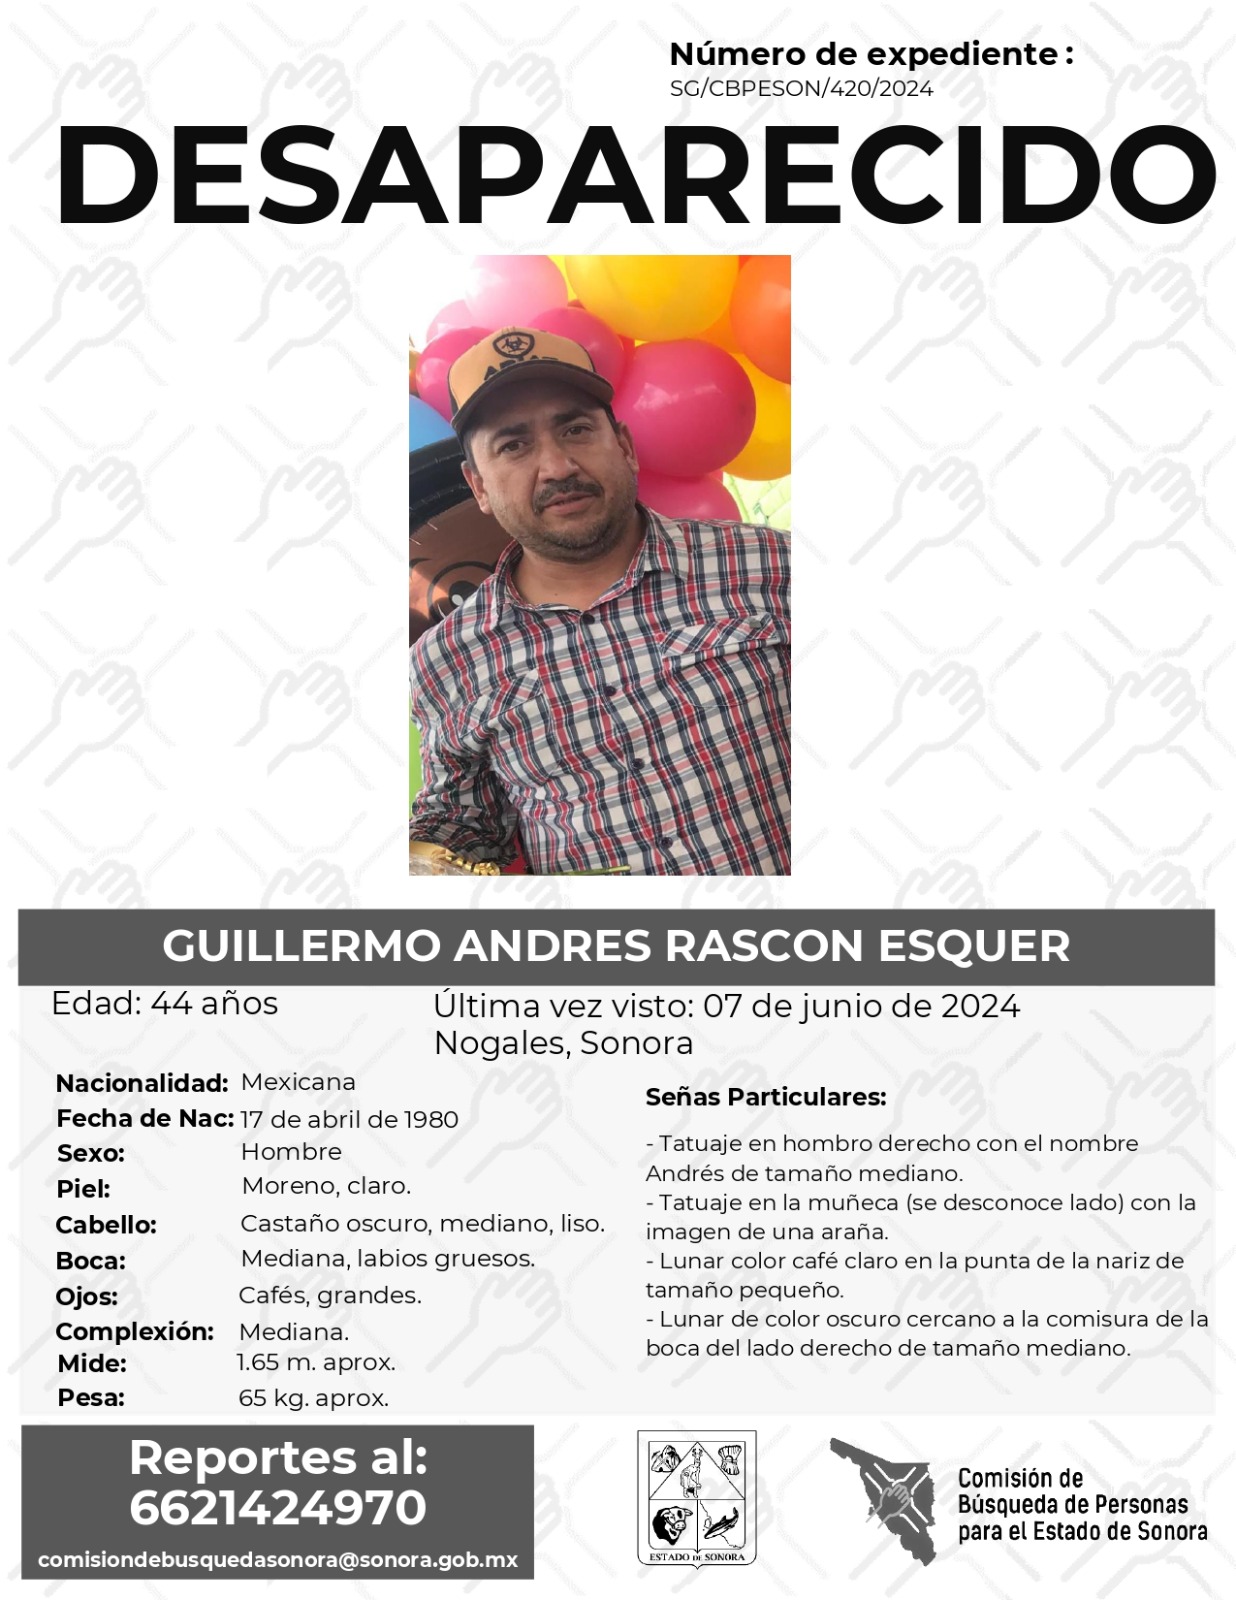 GUILLERMO ANDRES RASCON ESQUER - DESAPARECIDO